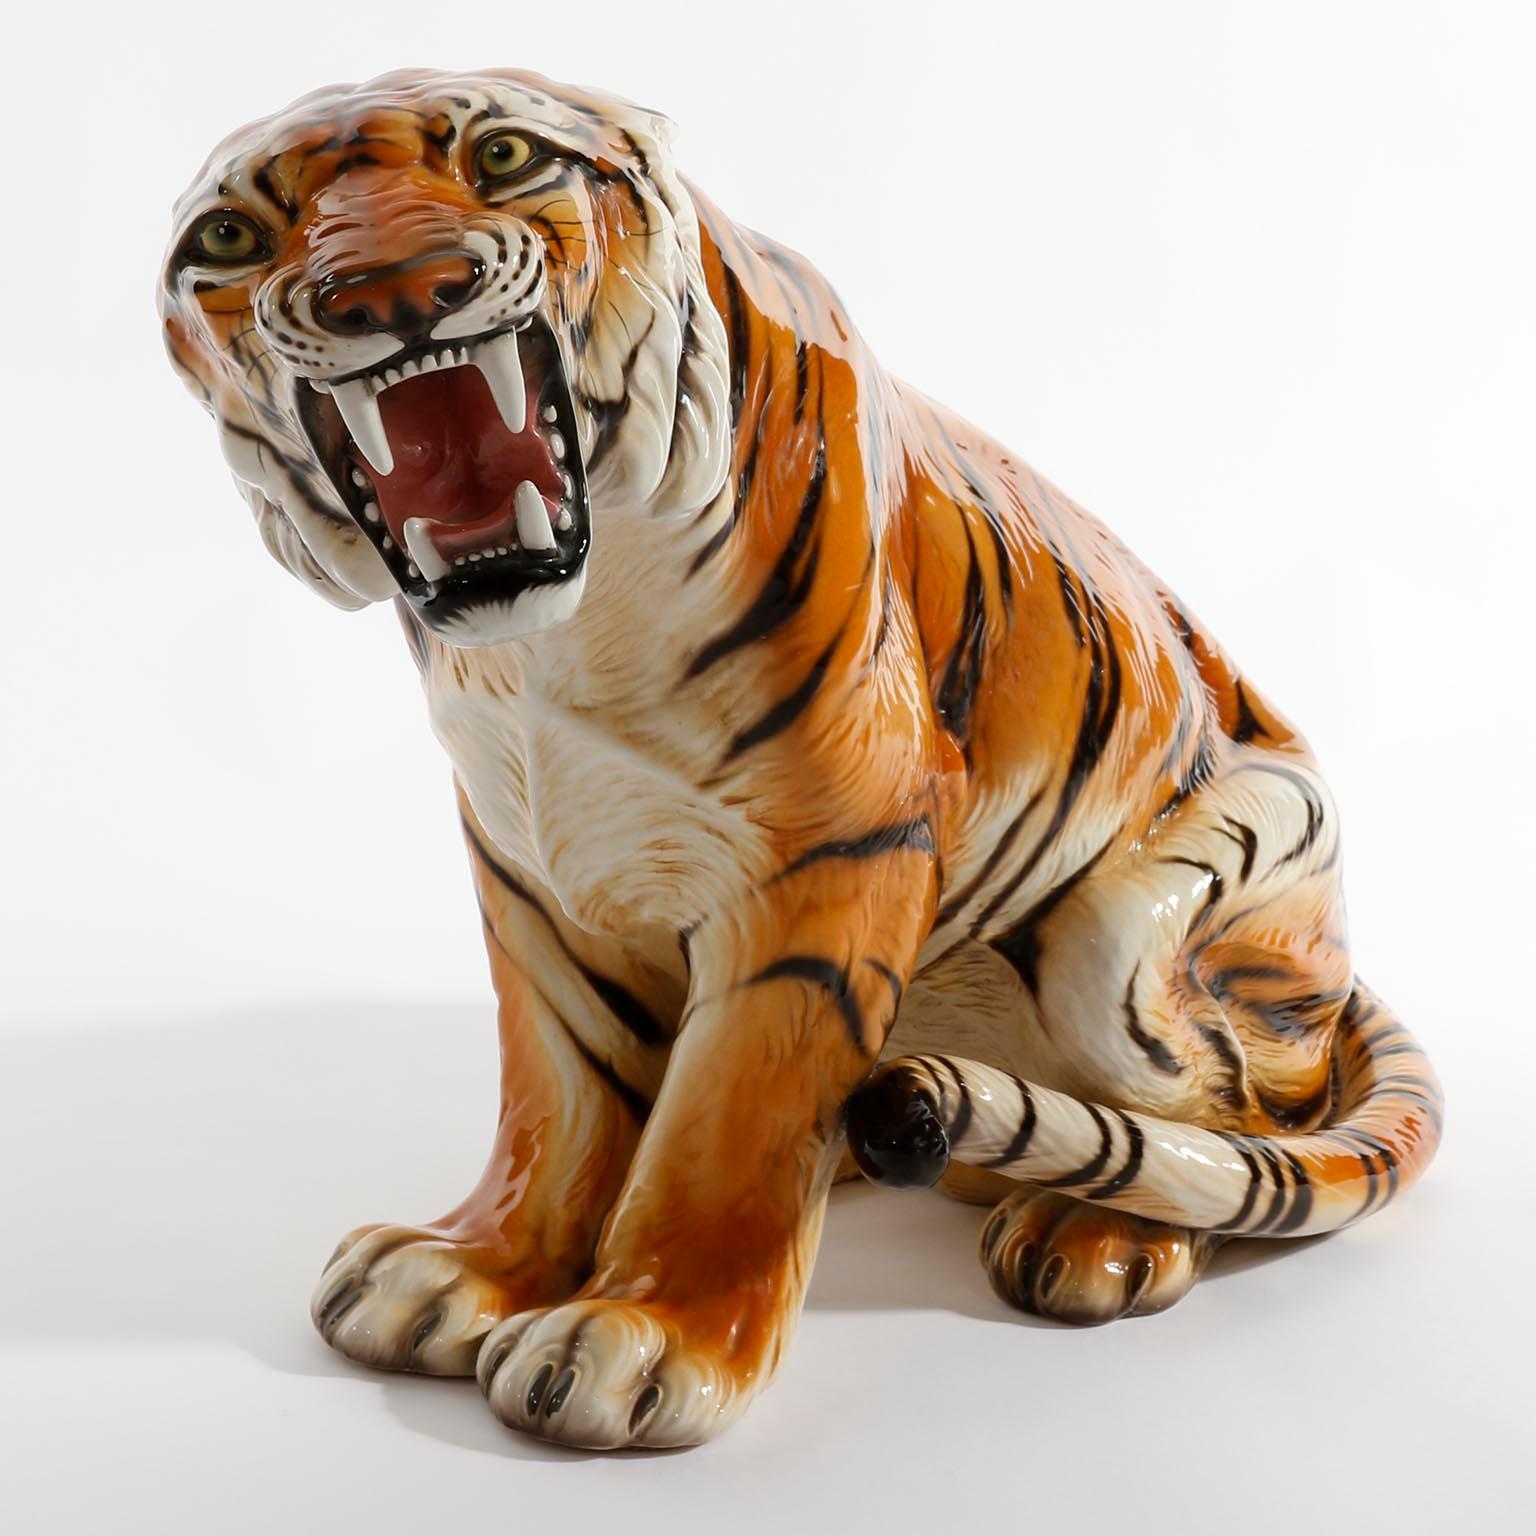 Sculpture de tigre en céramique peinte et émaillée de Ronzan, Italie, années 1950.
Une pièce magnifique avec de superbes détails.
Les zones blanches sur les photos sont des reflets de la lumière artificielle du studio photo.